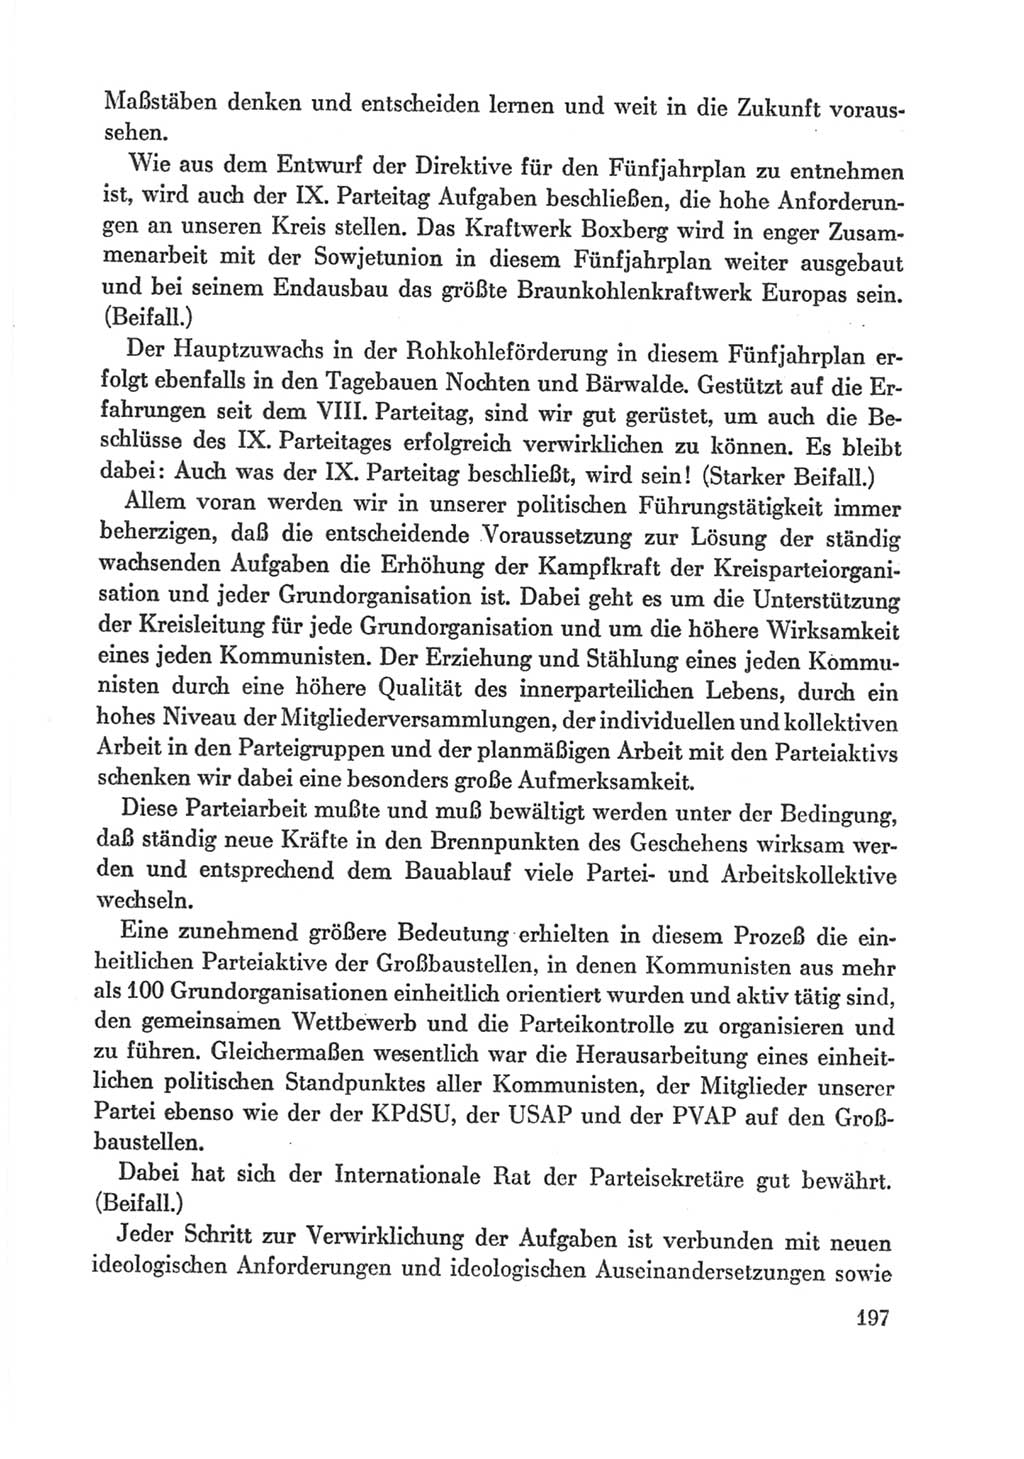 Protokoll der Verhandlungen des Ⅸ. Parteitages der Sozialistischen Einheitspartei Deutschlands (SED) [Deutsche Demokratische Republik (DDR)] 1976, Band 1, Seite 197 (Prot. Verh. Ⅸ. PT SED DDR 1976, Bd. 1, S. 197)